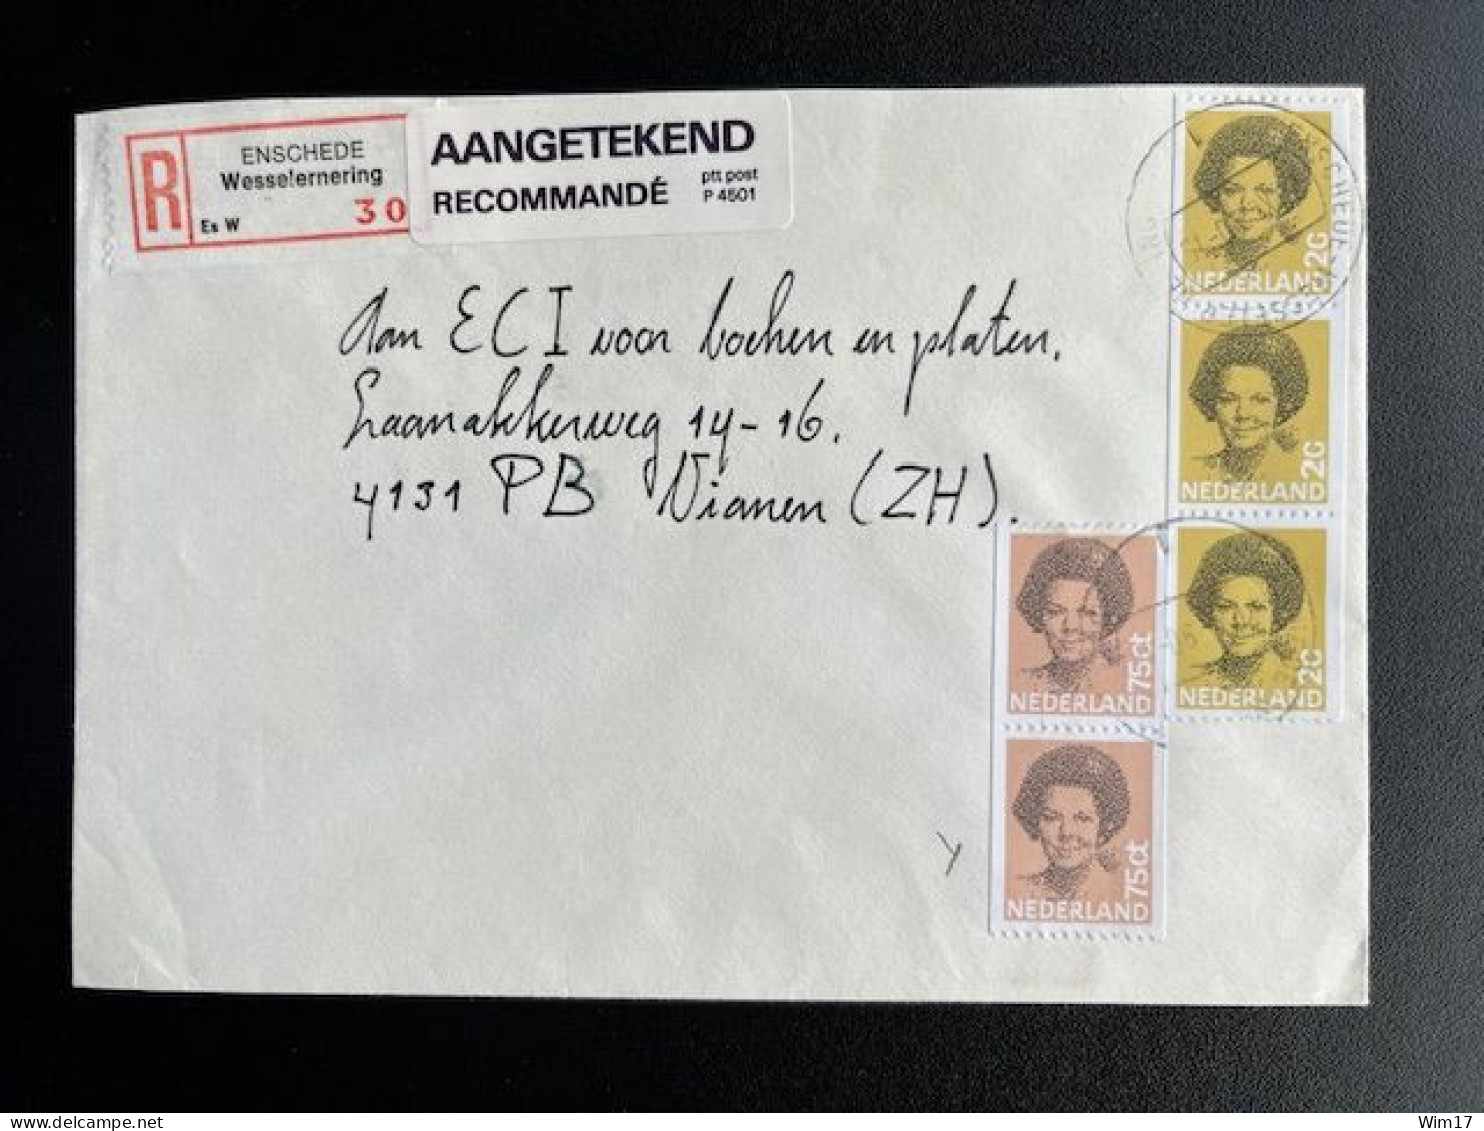 NETHERLANDS 1990 REGISTERED LETTER ENSCHEDE WESSELERNERING TO VIANEN 20-11-1990 NEDERLAND AANGETEKEND - Lettres & Documents